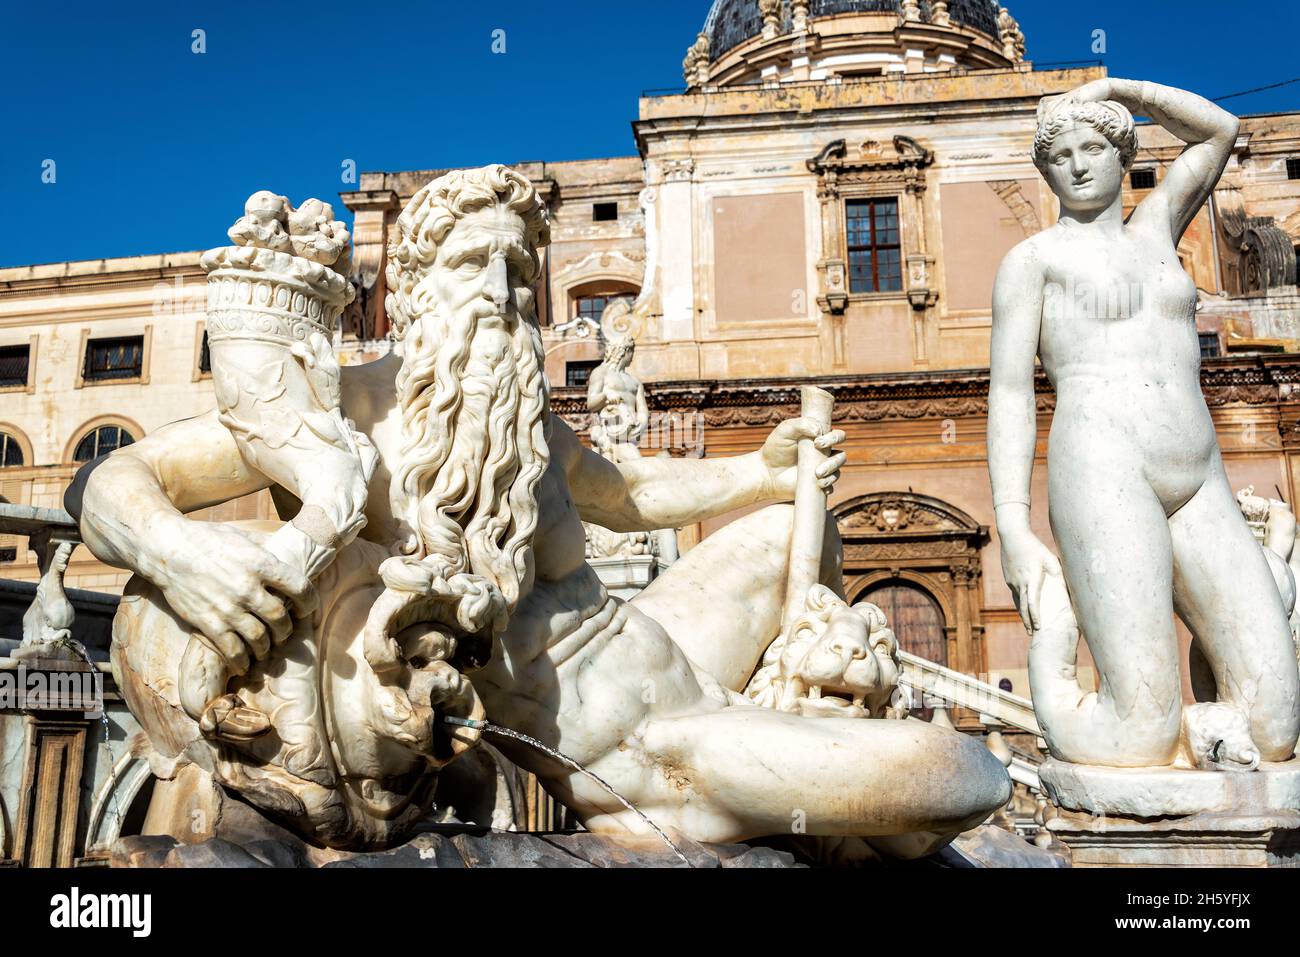 Detailsof the Pretoria Fountain in Palermo, Italy Stock Photo